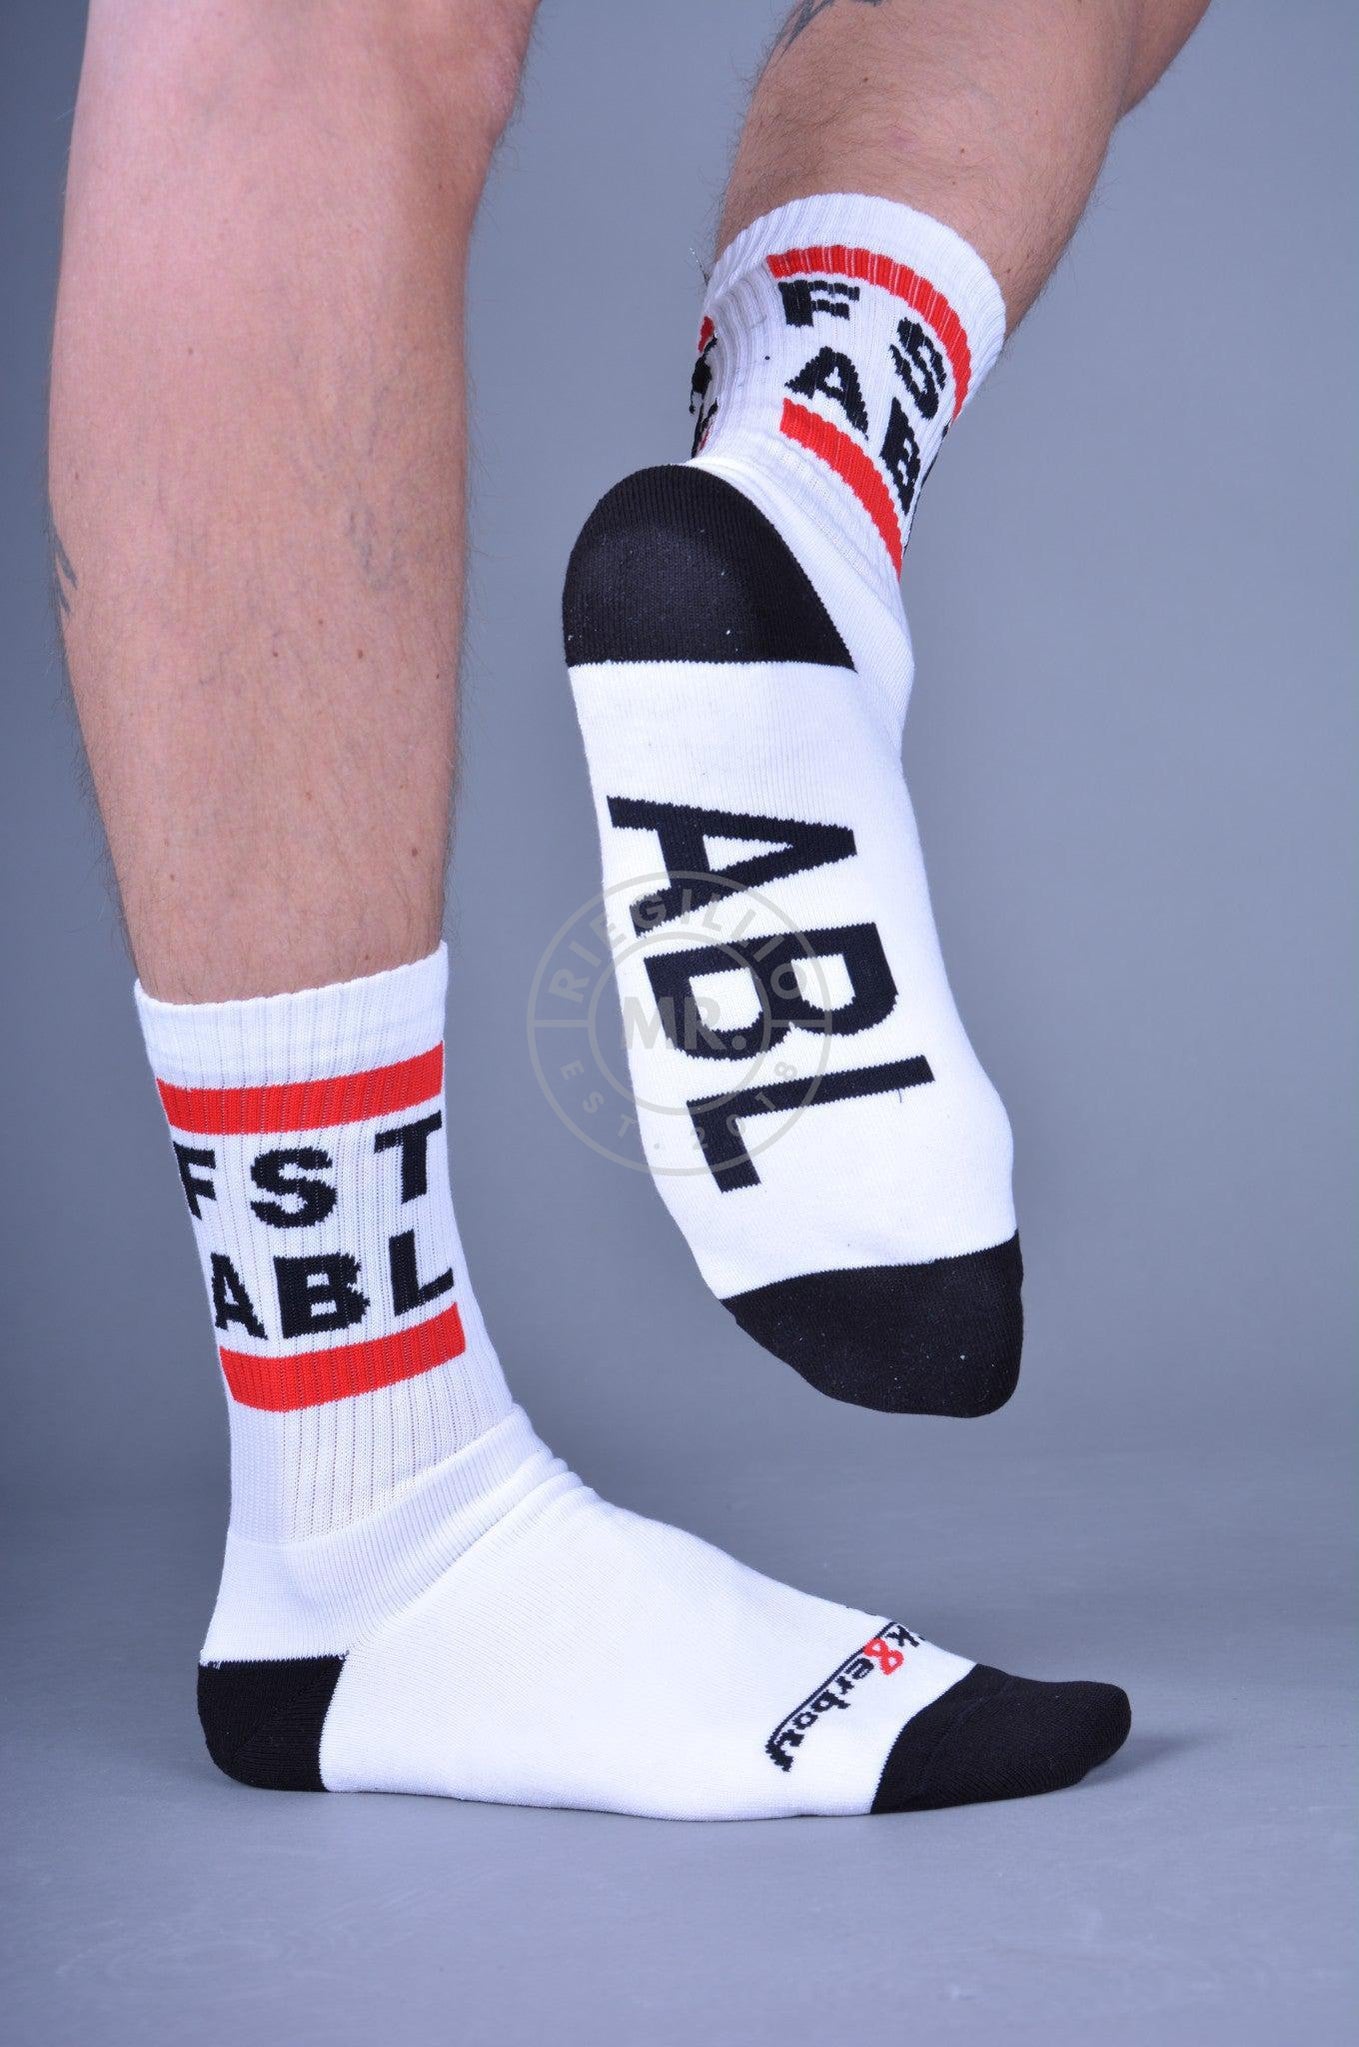 Sk8erboy FST ABL Socks-at MR. Riegillio